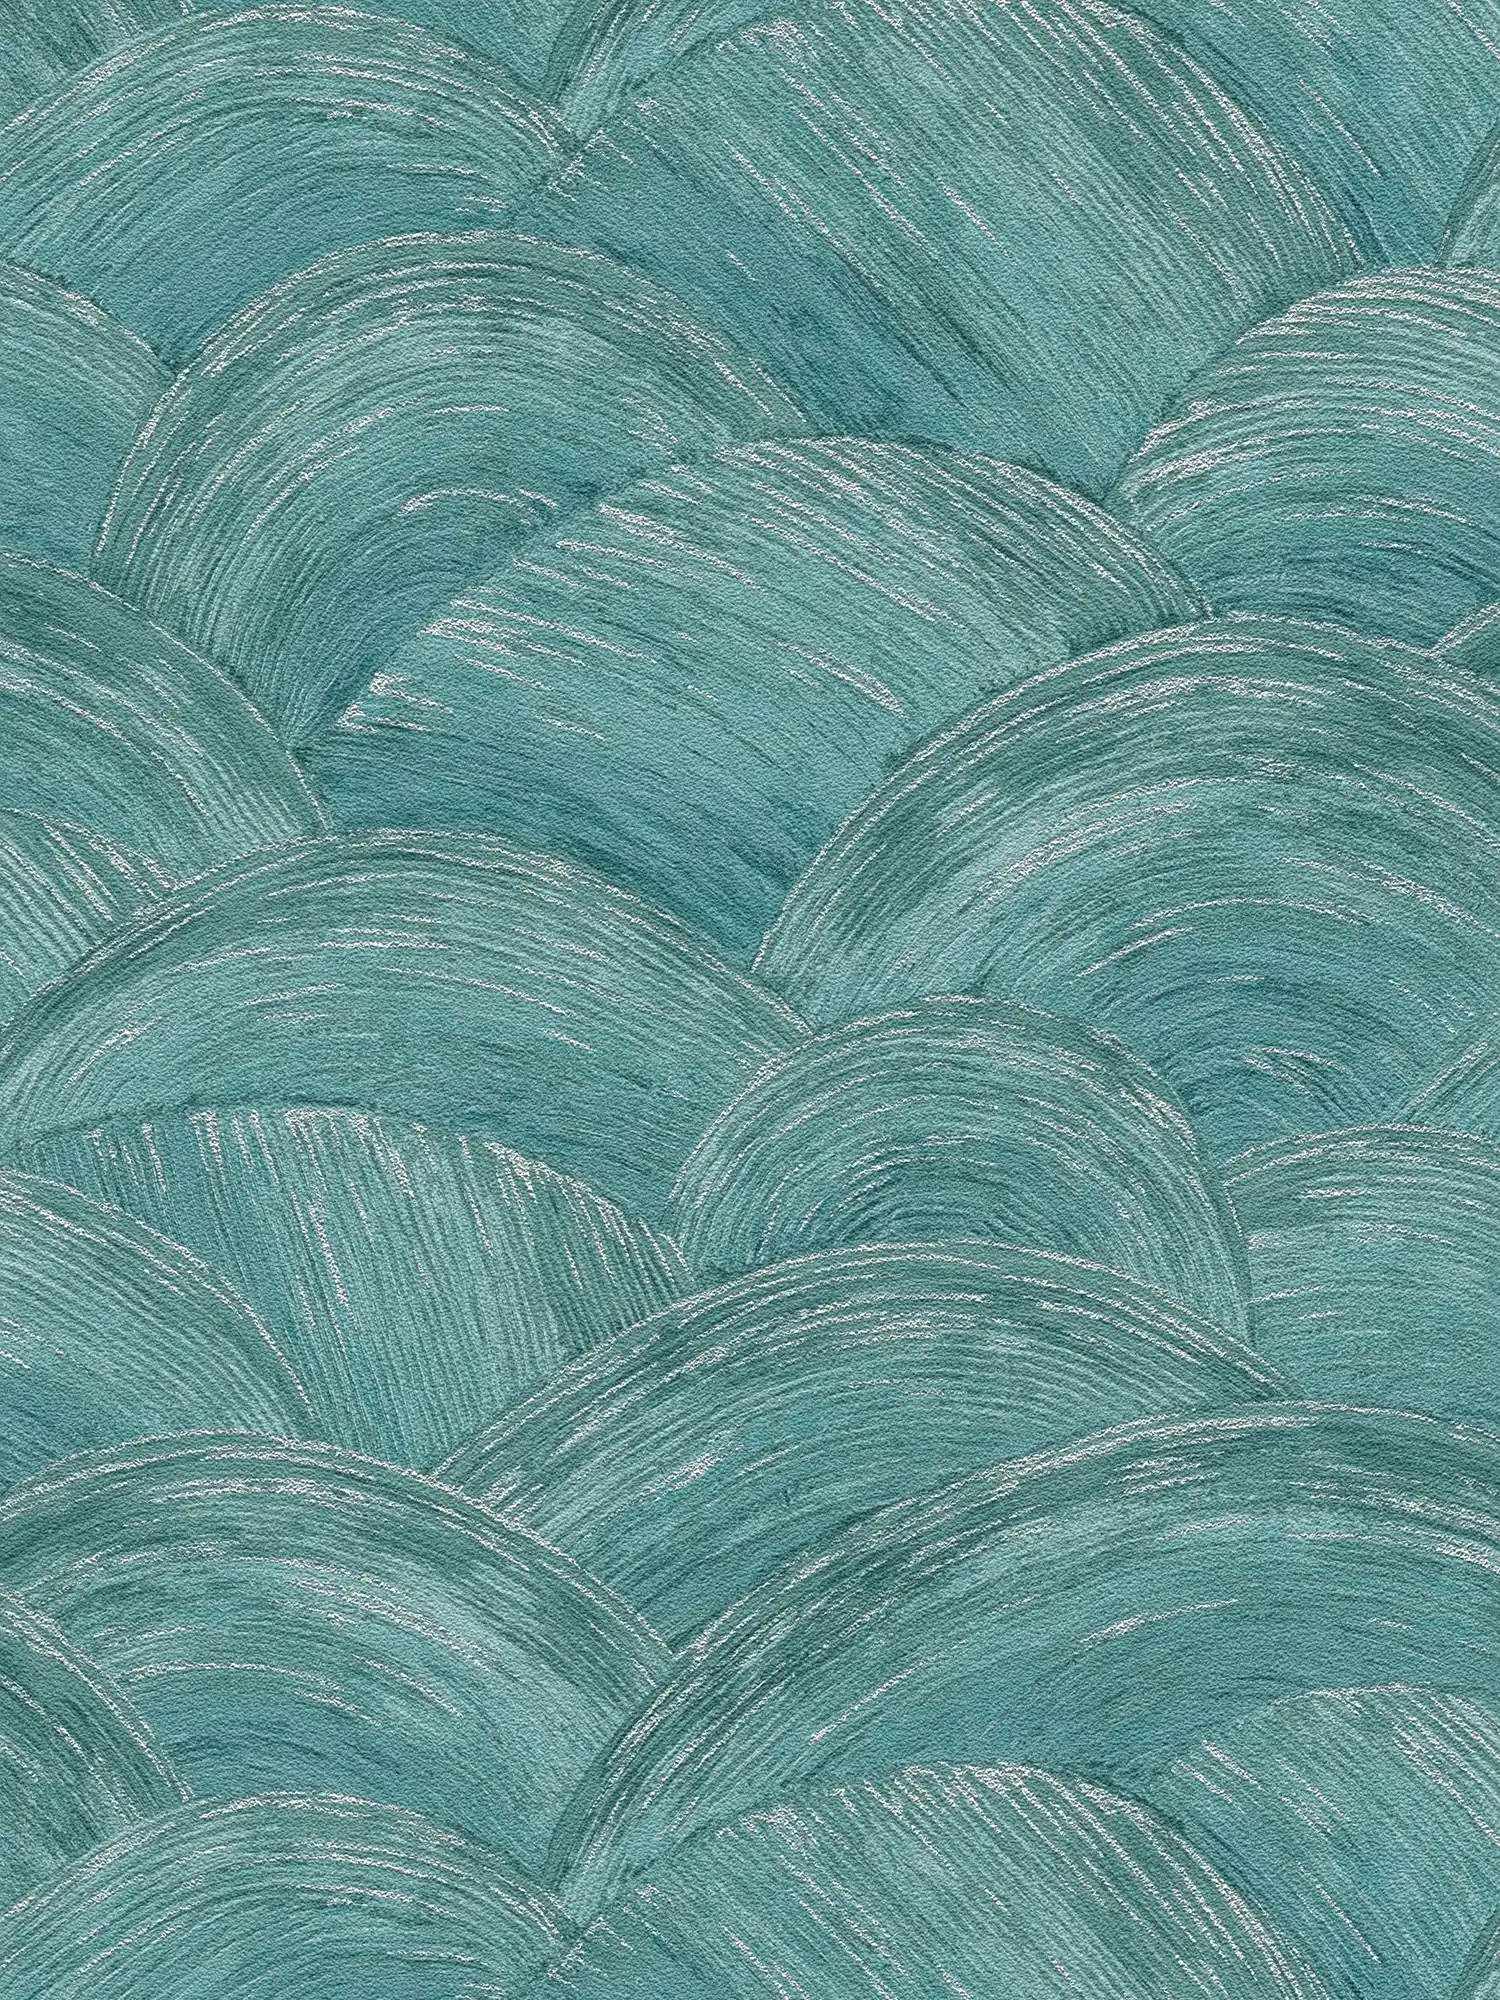 Pattern wallpaper with wavy wipe pattern & glossy effect - petrol, silver
